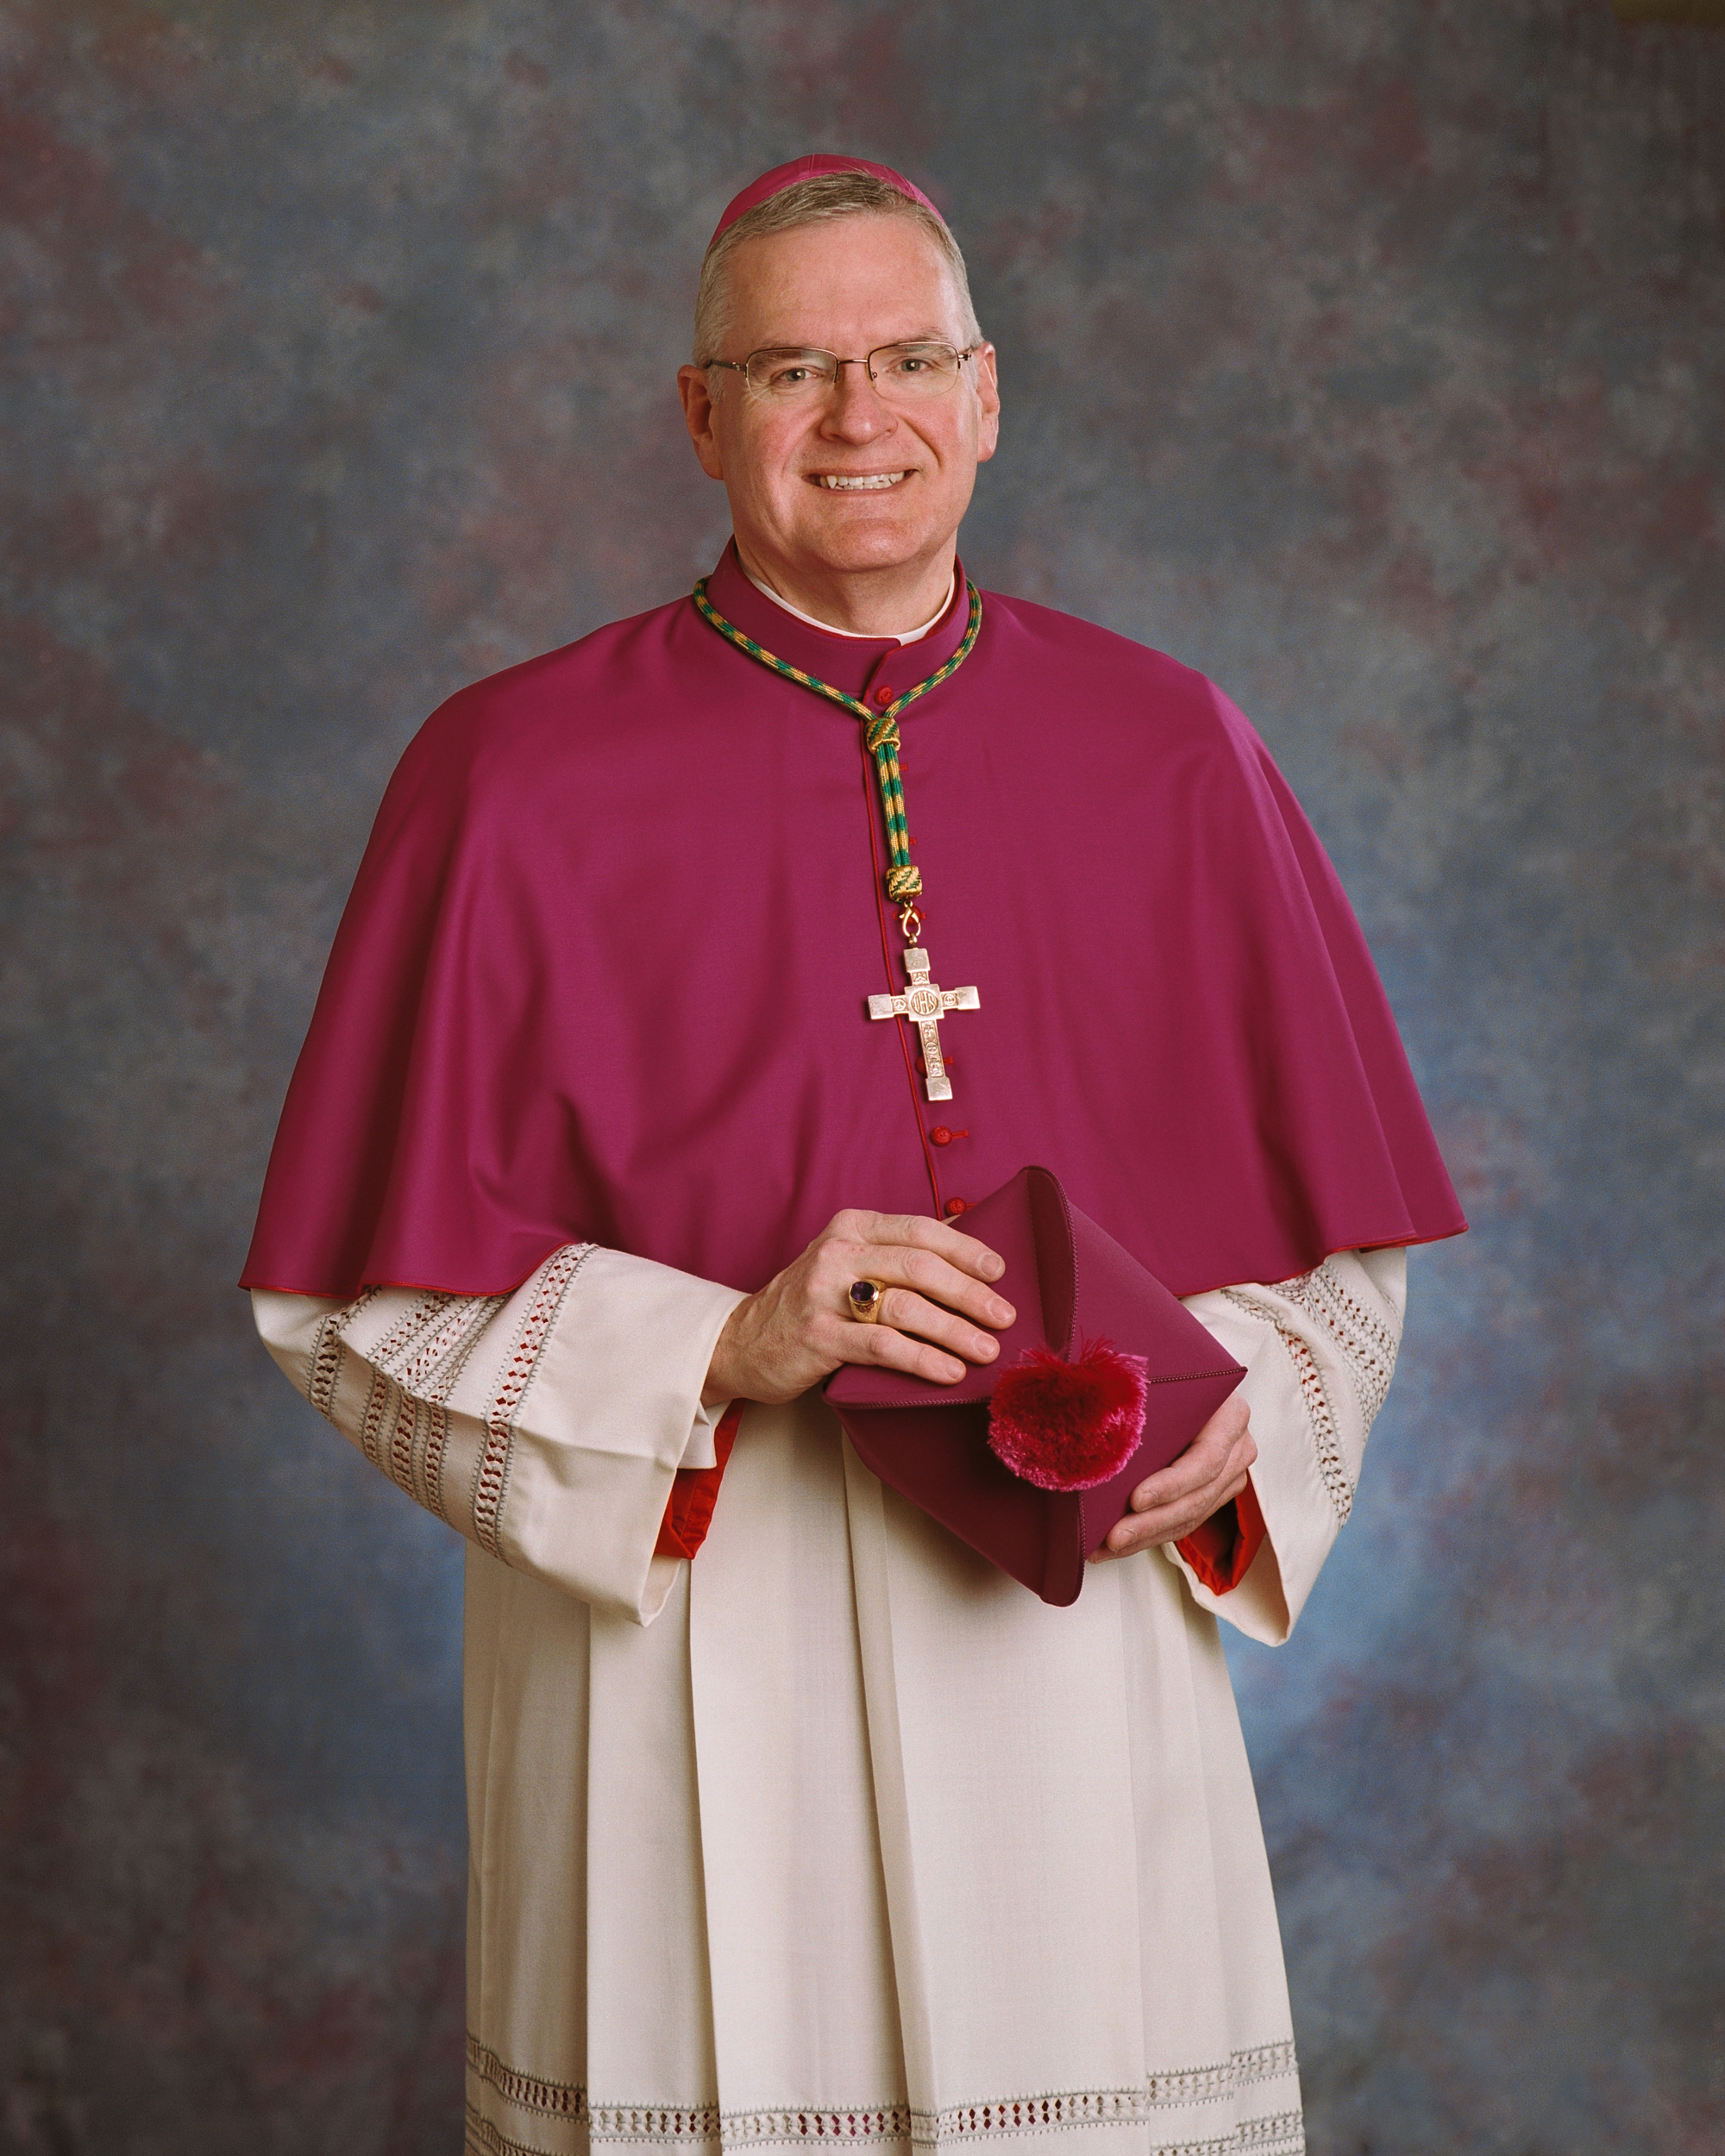 Bishop Joseph M. Siegel